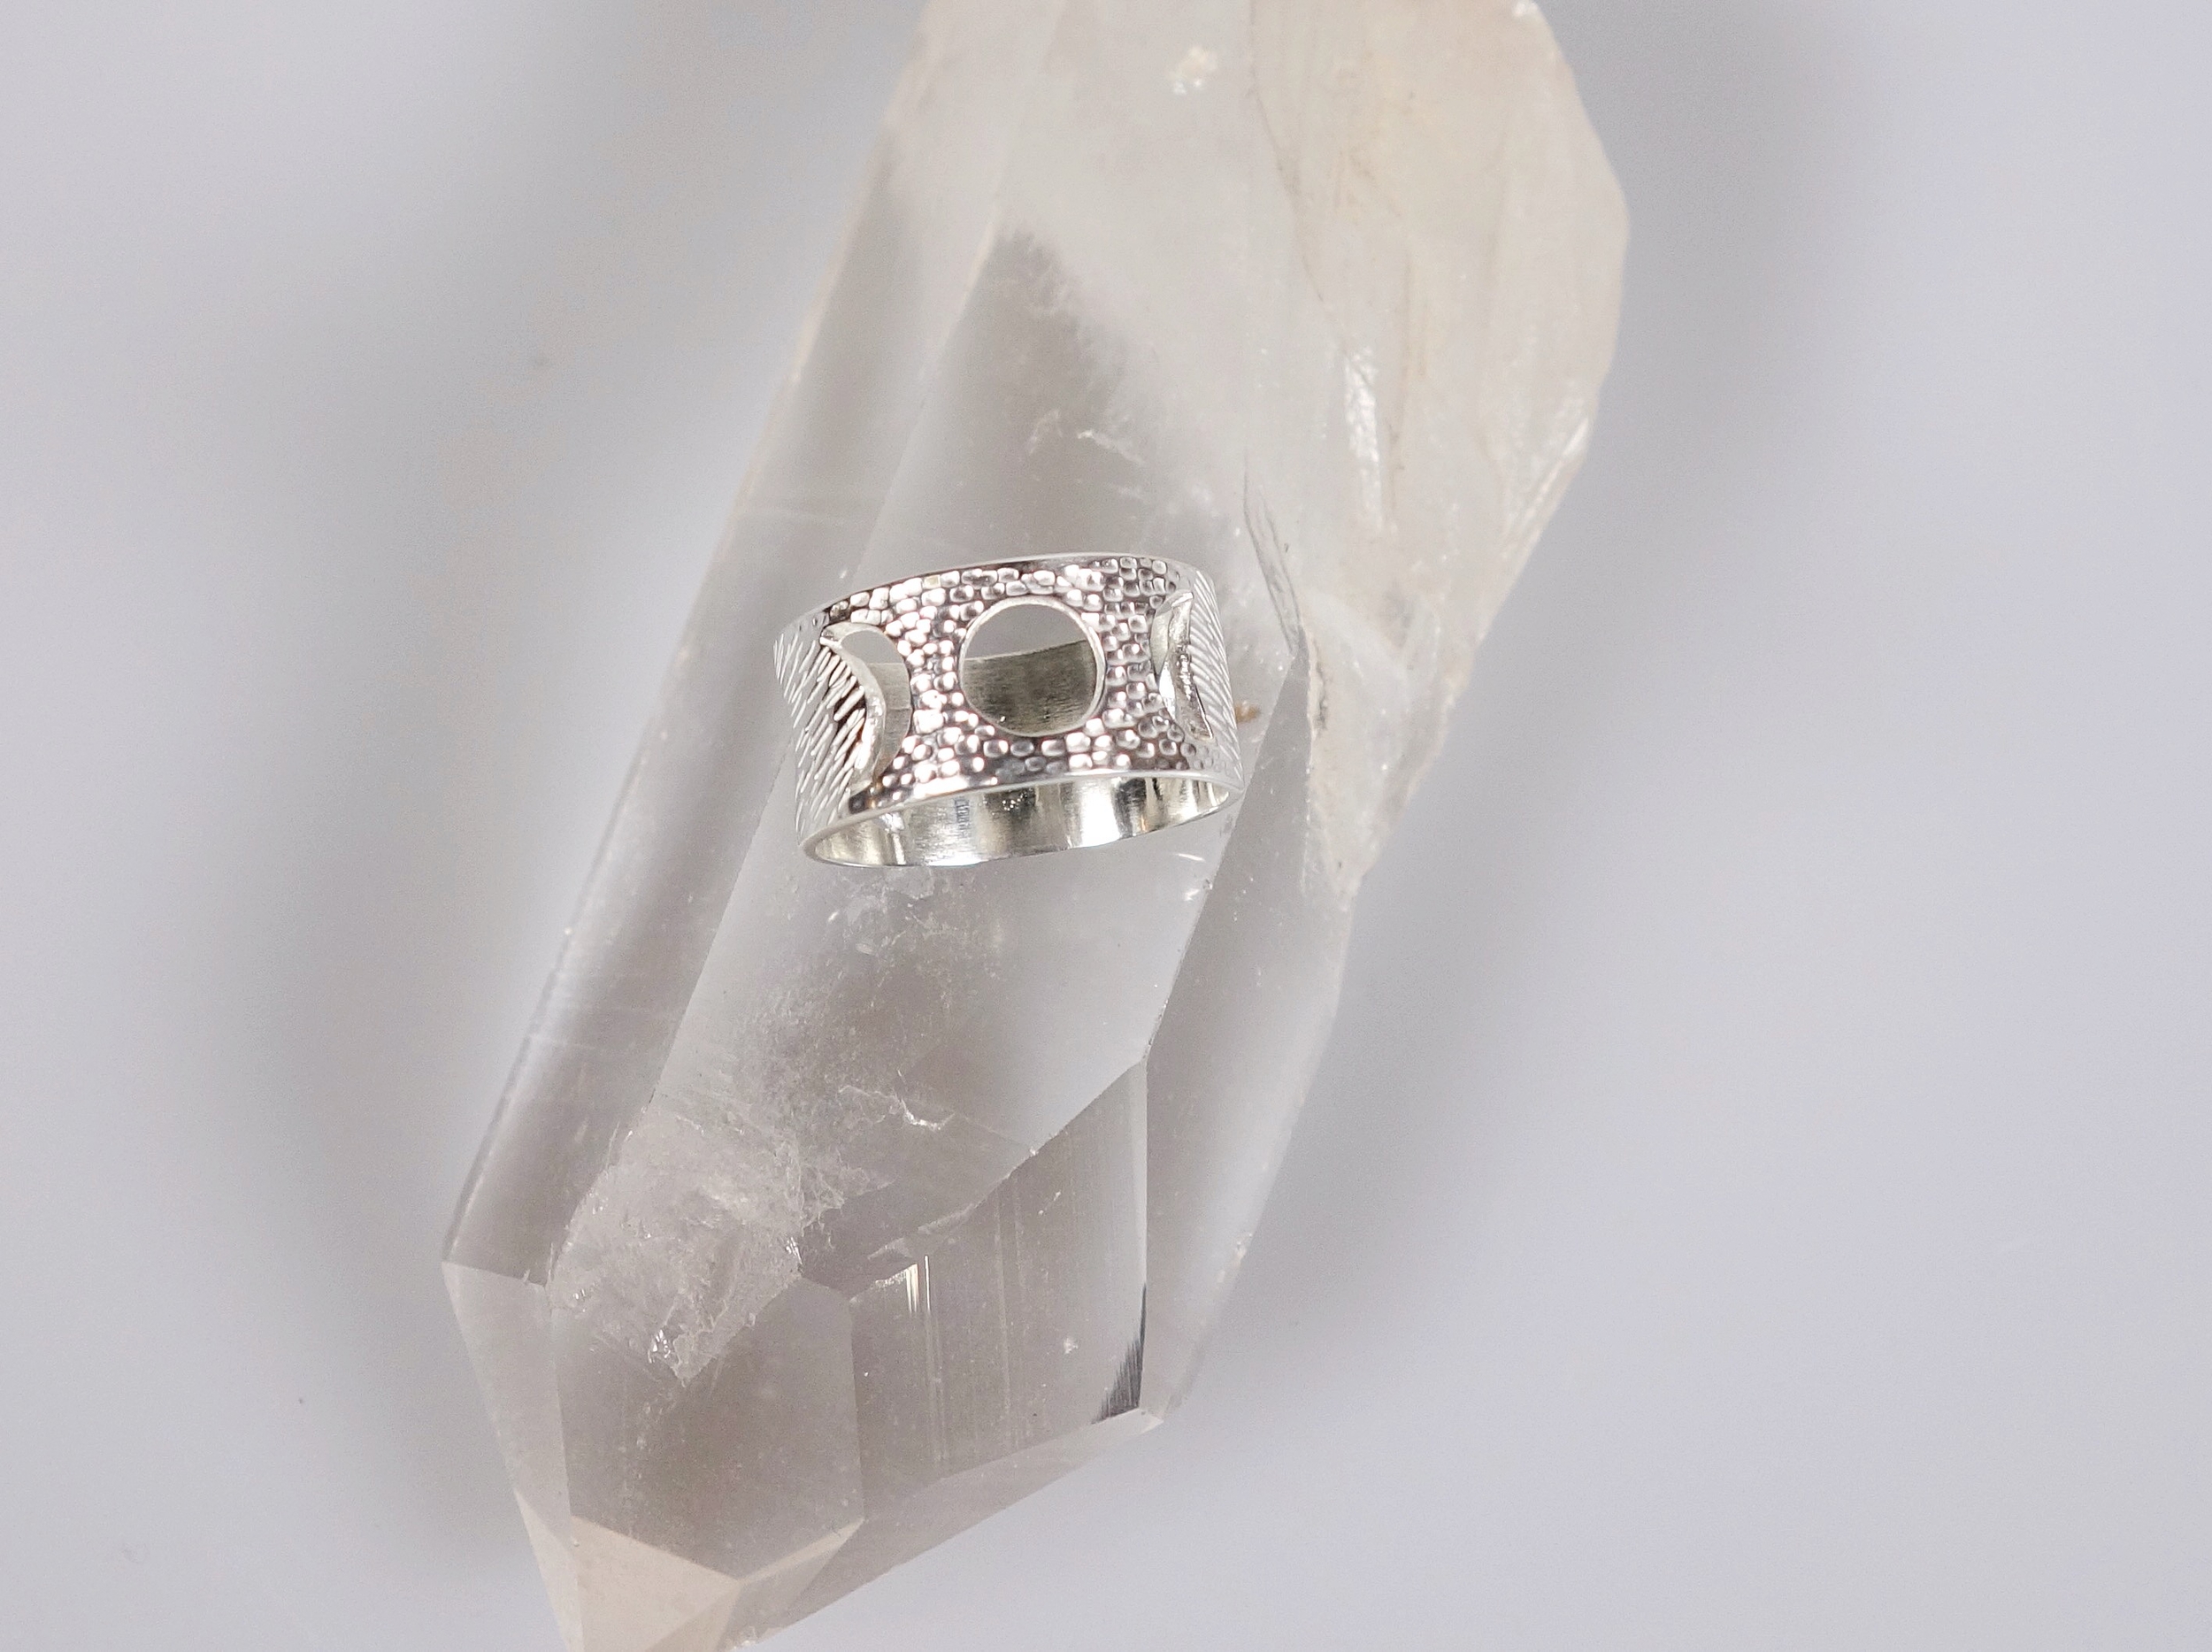 Bague féminin sacré (cycle lunaire) en argent massif ciselé, vue du dessus sur un cristal de roche et un fond blanc à la lumière électrique